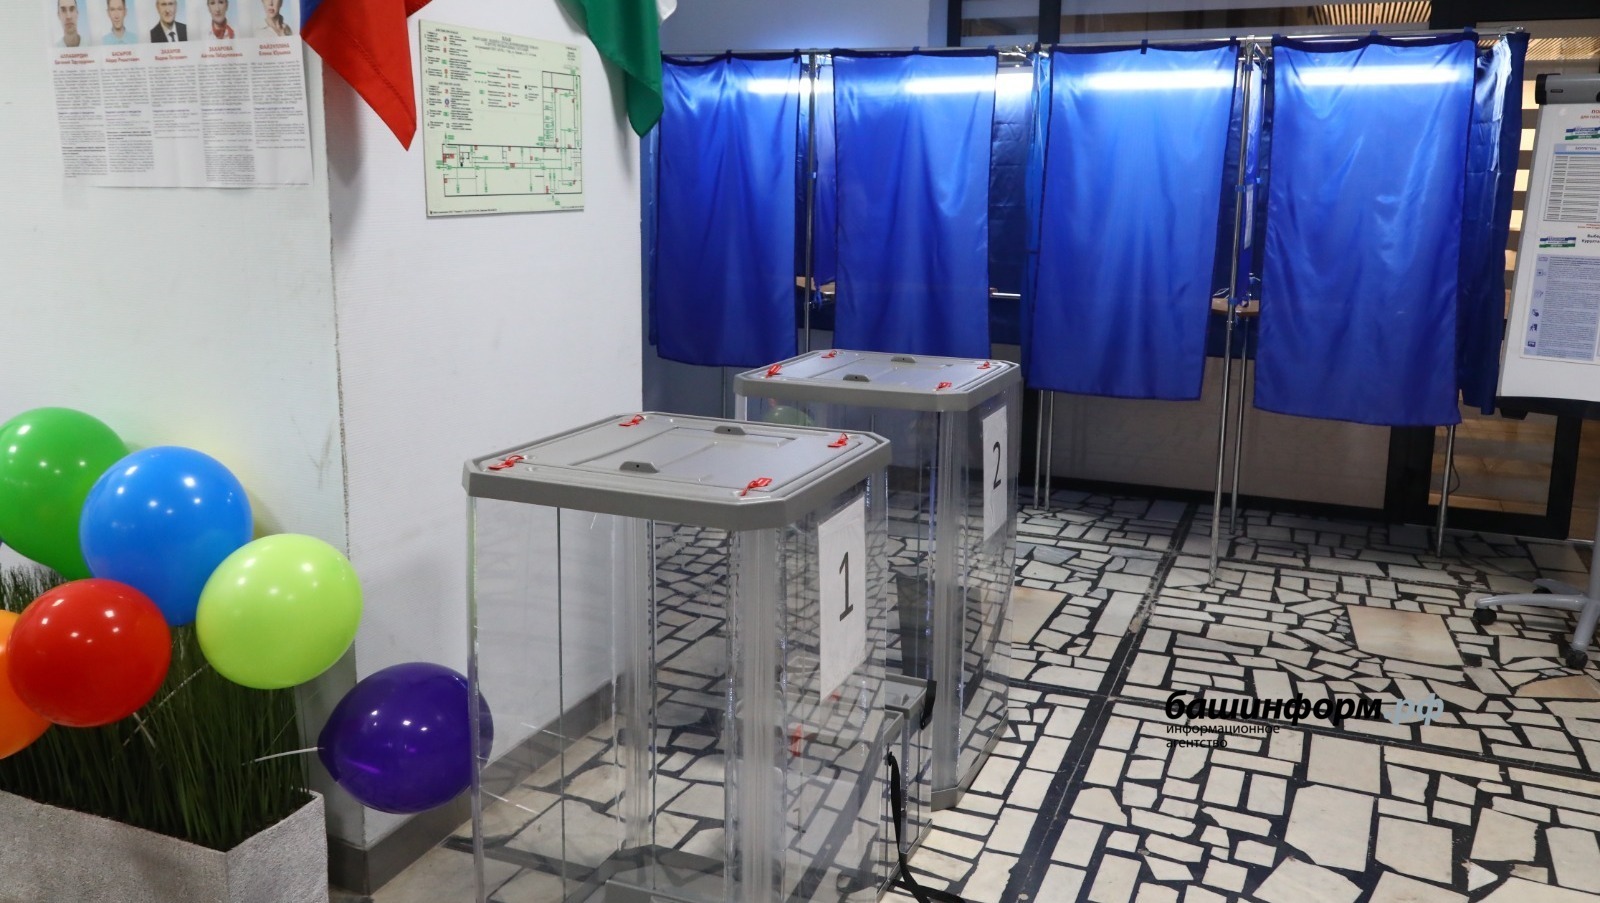 В Башкирии эксперты назвали причины успешных и легитимных выборов 10 сентября